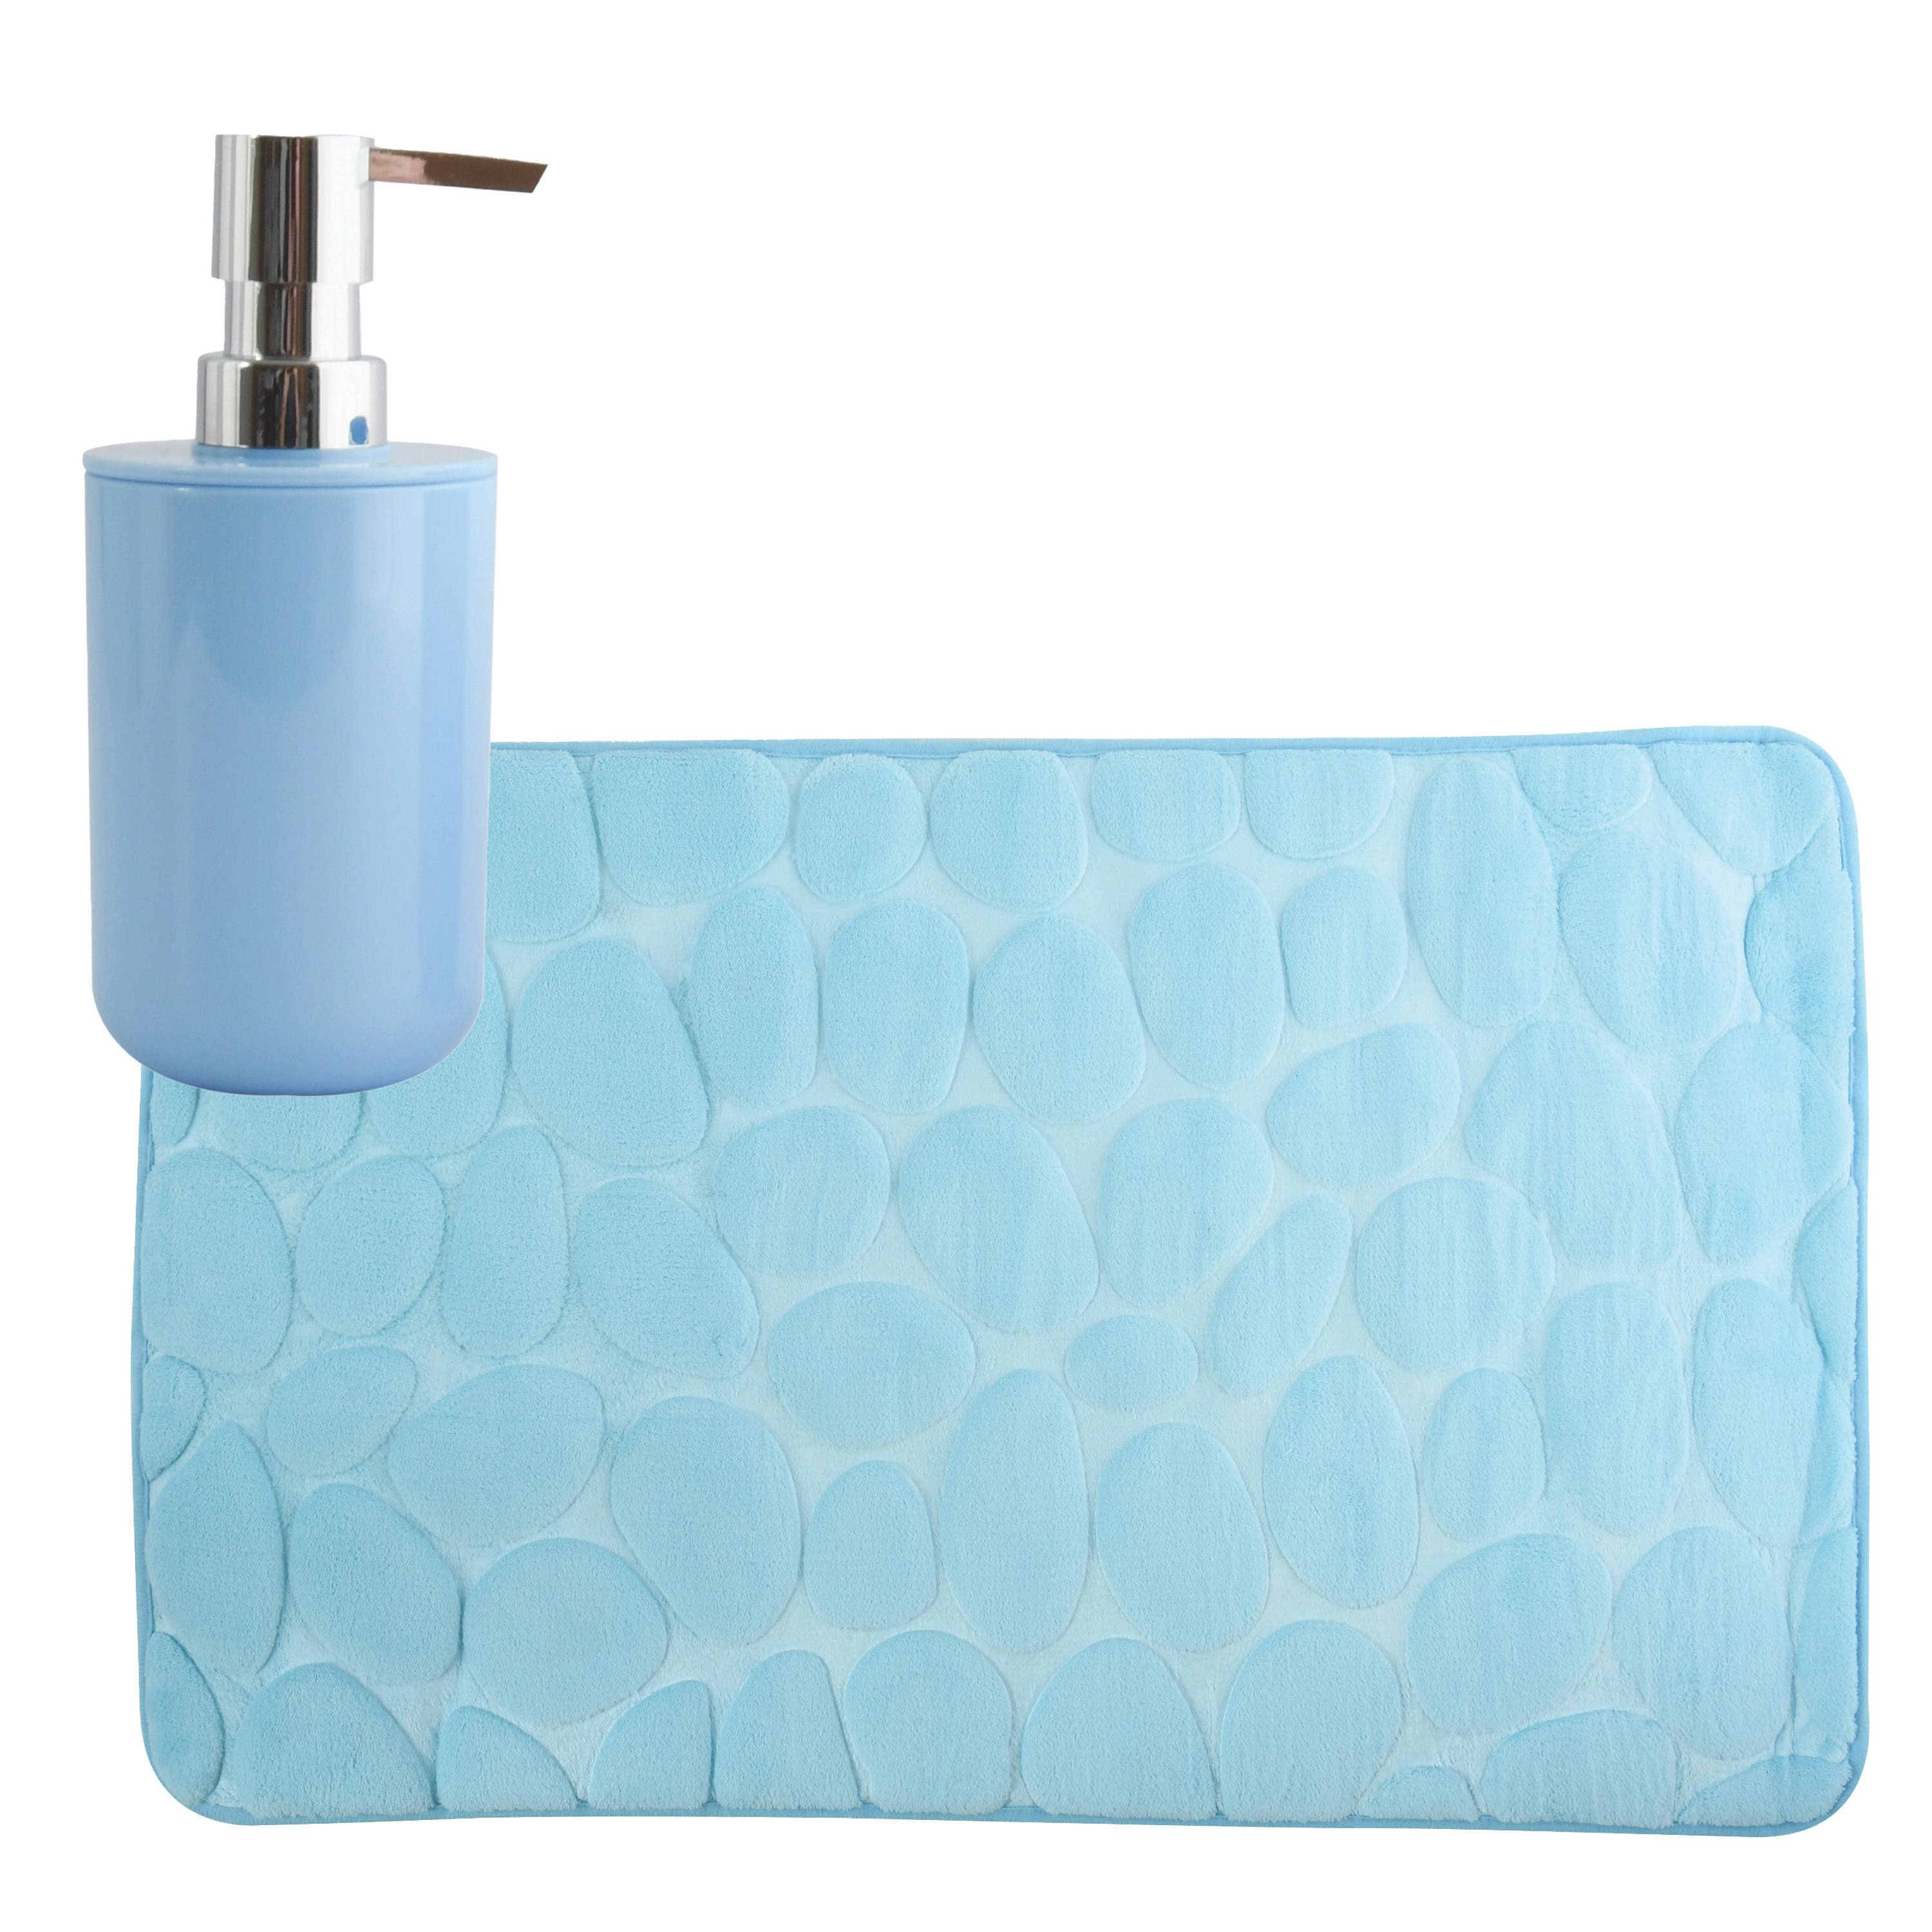 MSV badkamer droogloop mat-tapijt Kiezel 50 x 80 cm zelfde kleur zeeppompje lichtblauw